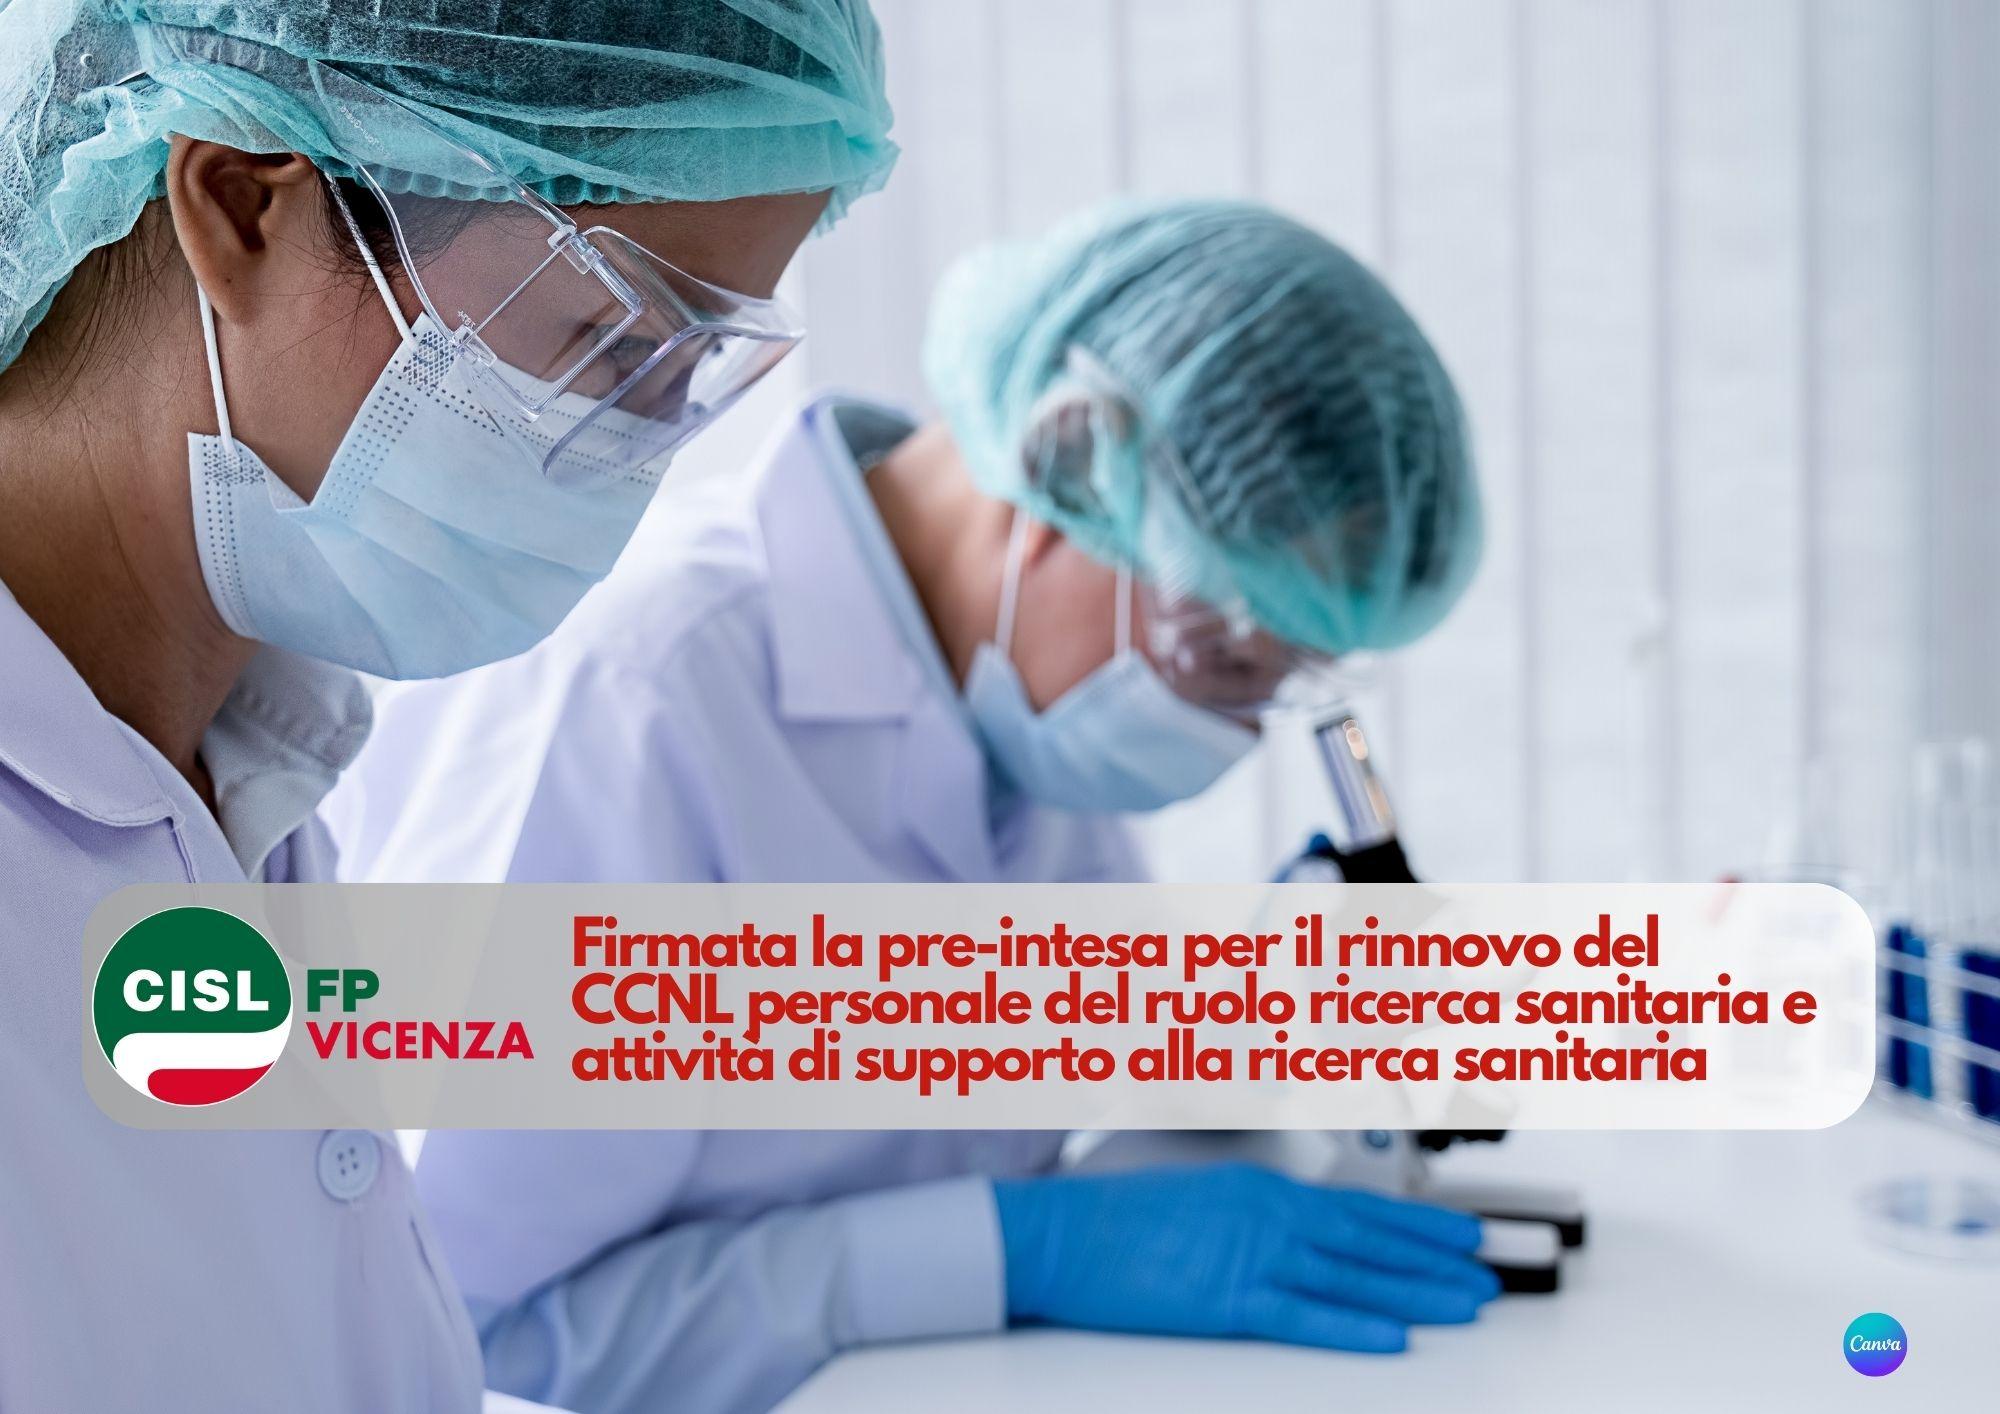 CISL FP Vicenza. Firmata la pre-intesa per il rinnovo del CCNL personale del ruolo ricerca sanitaria attività di supporto alla ricerca sanitaria